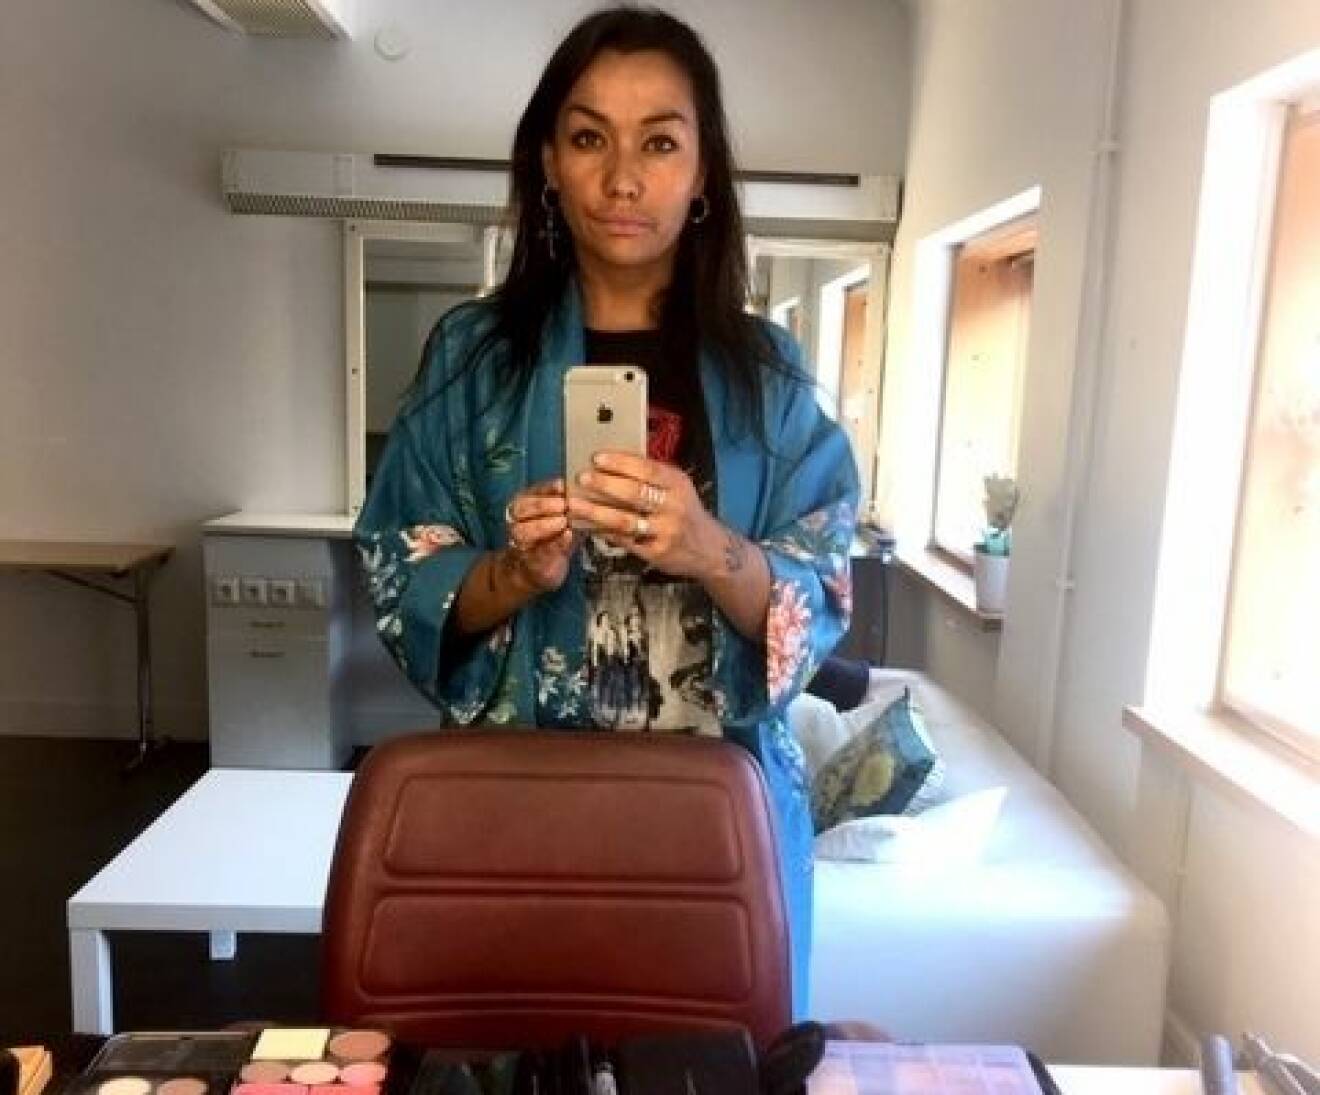 Makeup-artisten Soley Astudottir tar en selfie i spegeln med hjälp av sin iphone.